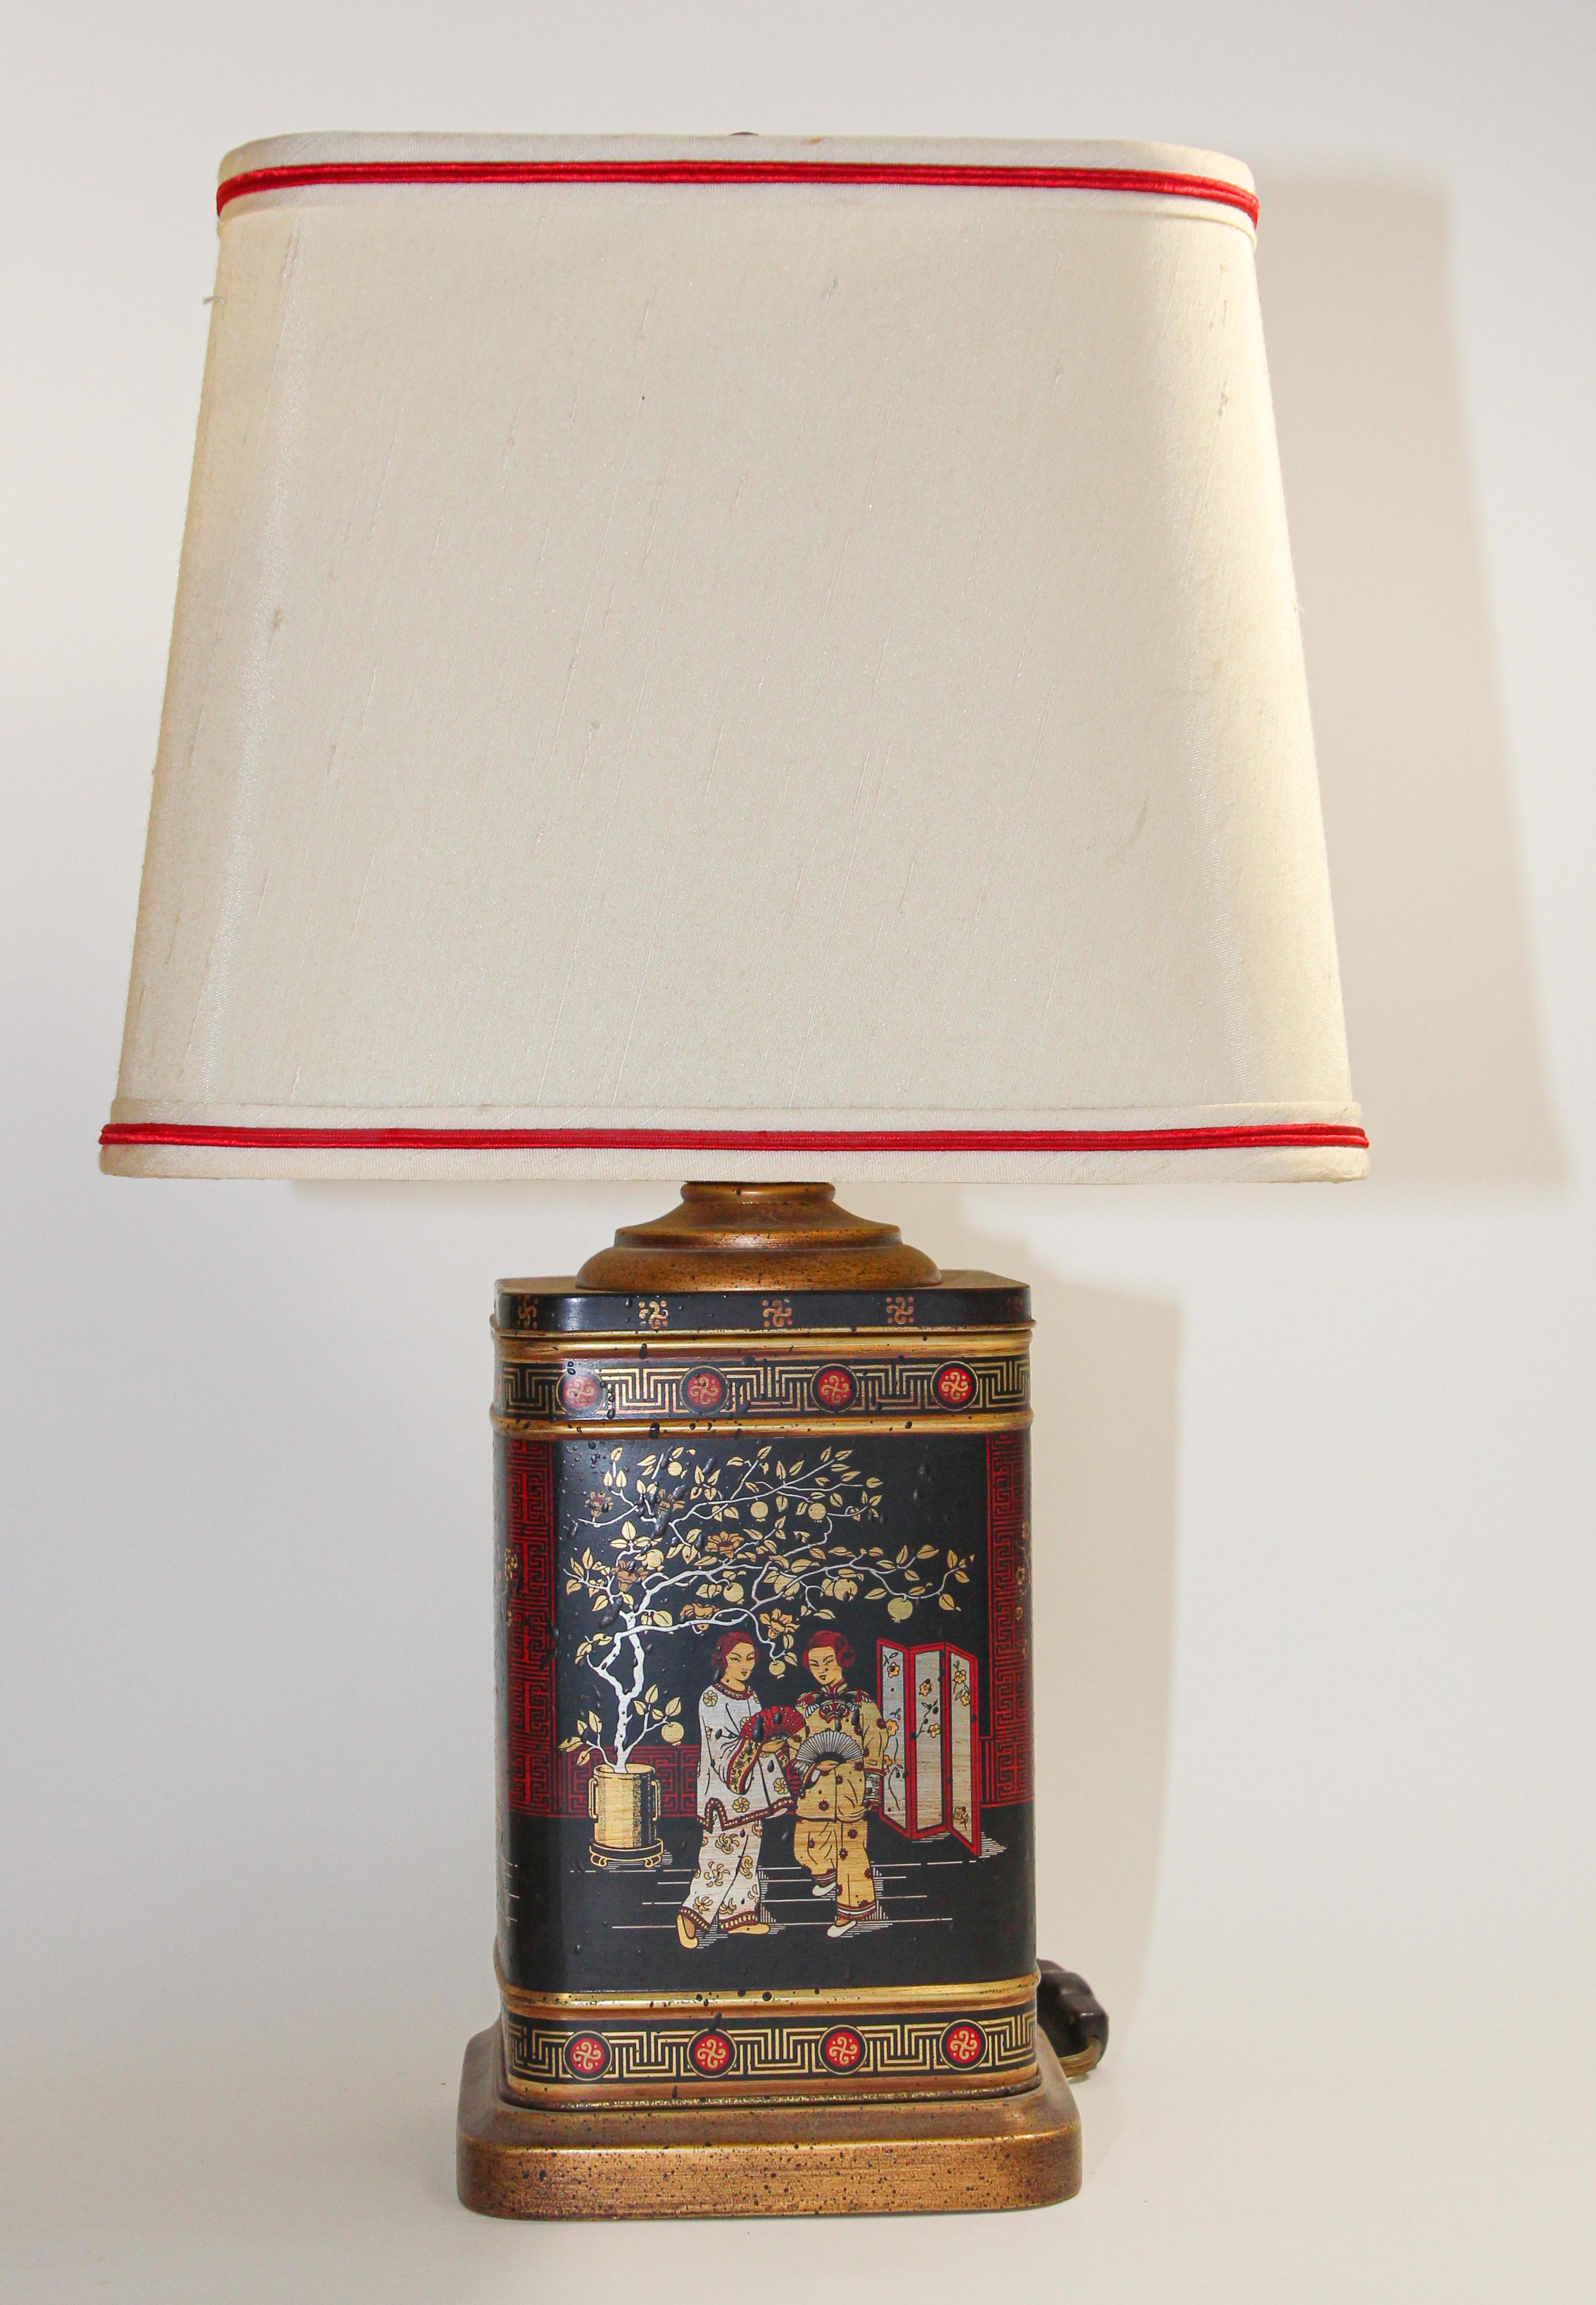 Satz von zwei Frederick Cooper Chinoiserie-Tischlampen aus den 1950er Jahren.
Vintage Frederick Cooper Asiatische Teedose in Tischlampen verwandelt,
Vintage-Tischlampen, eine groß, eine kleiner, von Frederick Cooper Chicago.
Auf goldfarbenem